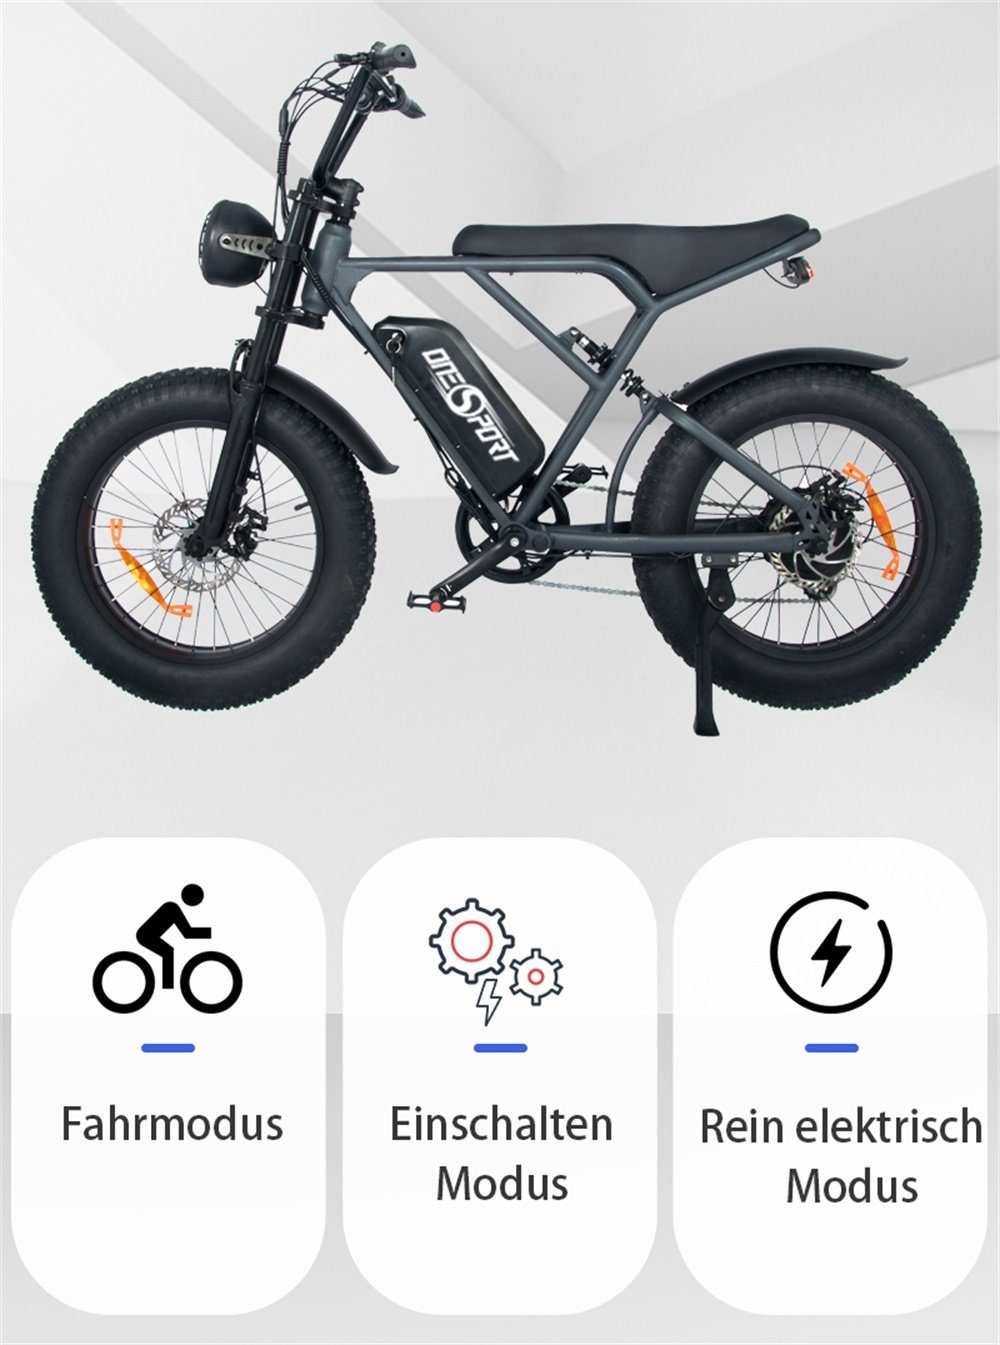 Gashebel: Einbau Shimano Heckmotor, dem Fahrmodi: rein 7-Gang,48V 816Wh,max Power-Assist-Modus) Gashebels erreicht 25km/h, E-Bike Pedal-Modus kann Nach (Optionaler elektrischer Fangqi 20Zoll Modus und des ein E-bike, werden,